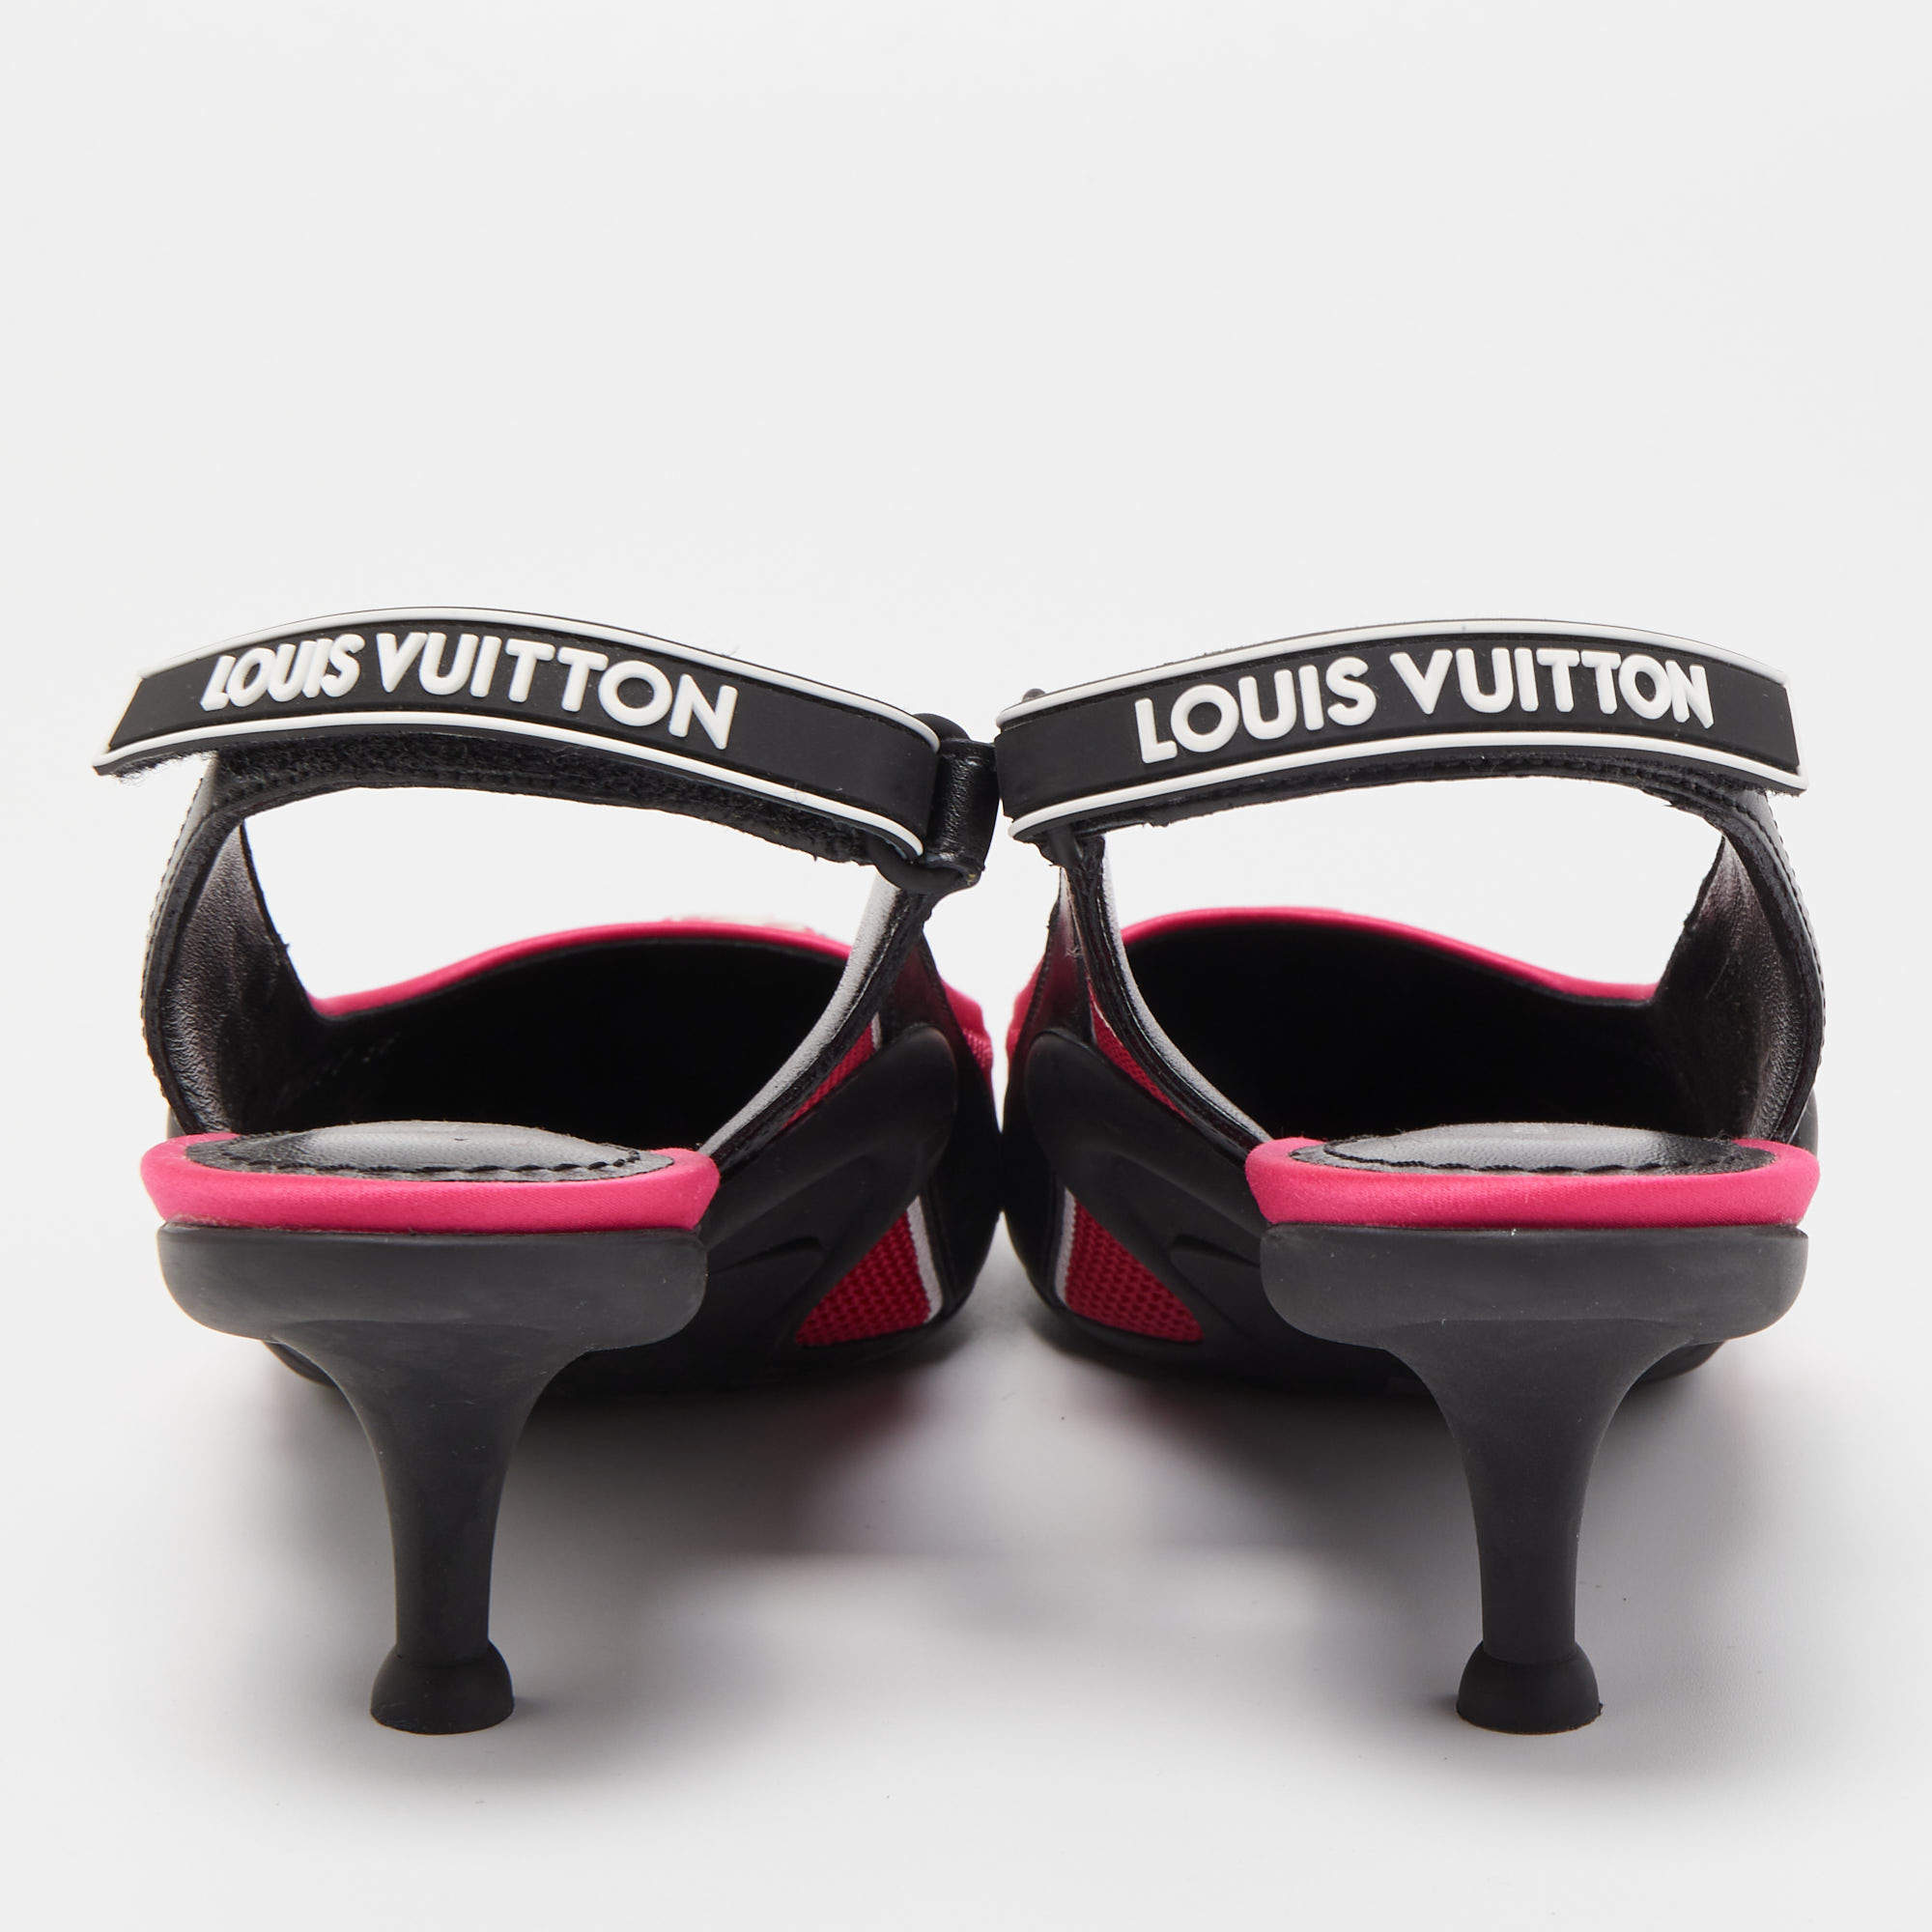 Louis Vuitton Archlight Slingback Pump BLACK. Size 38.0